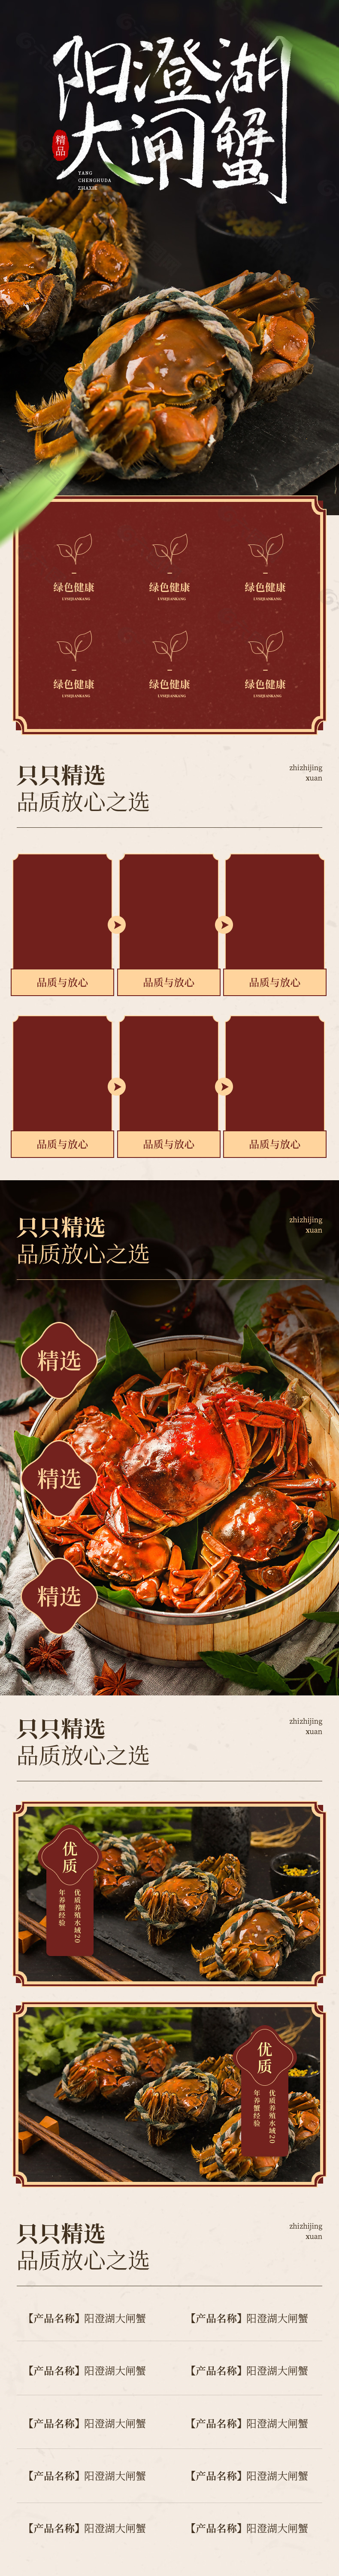 阳澄湖大闸蟹淘宝生鲜产品描述界面设计